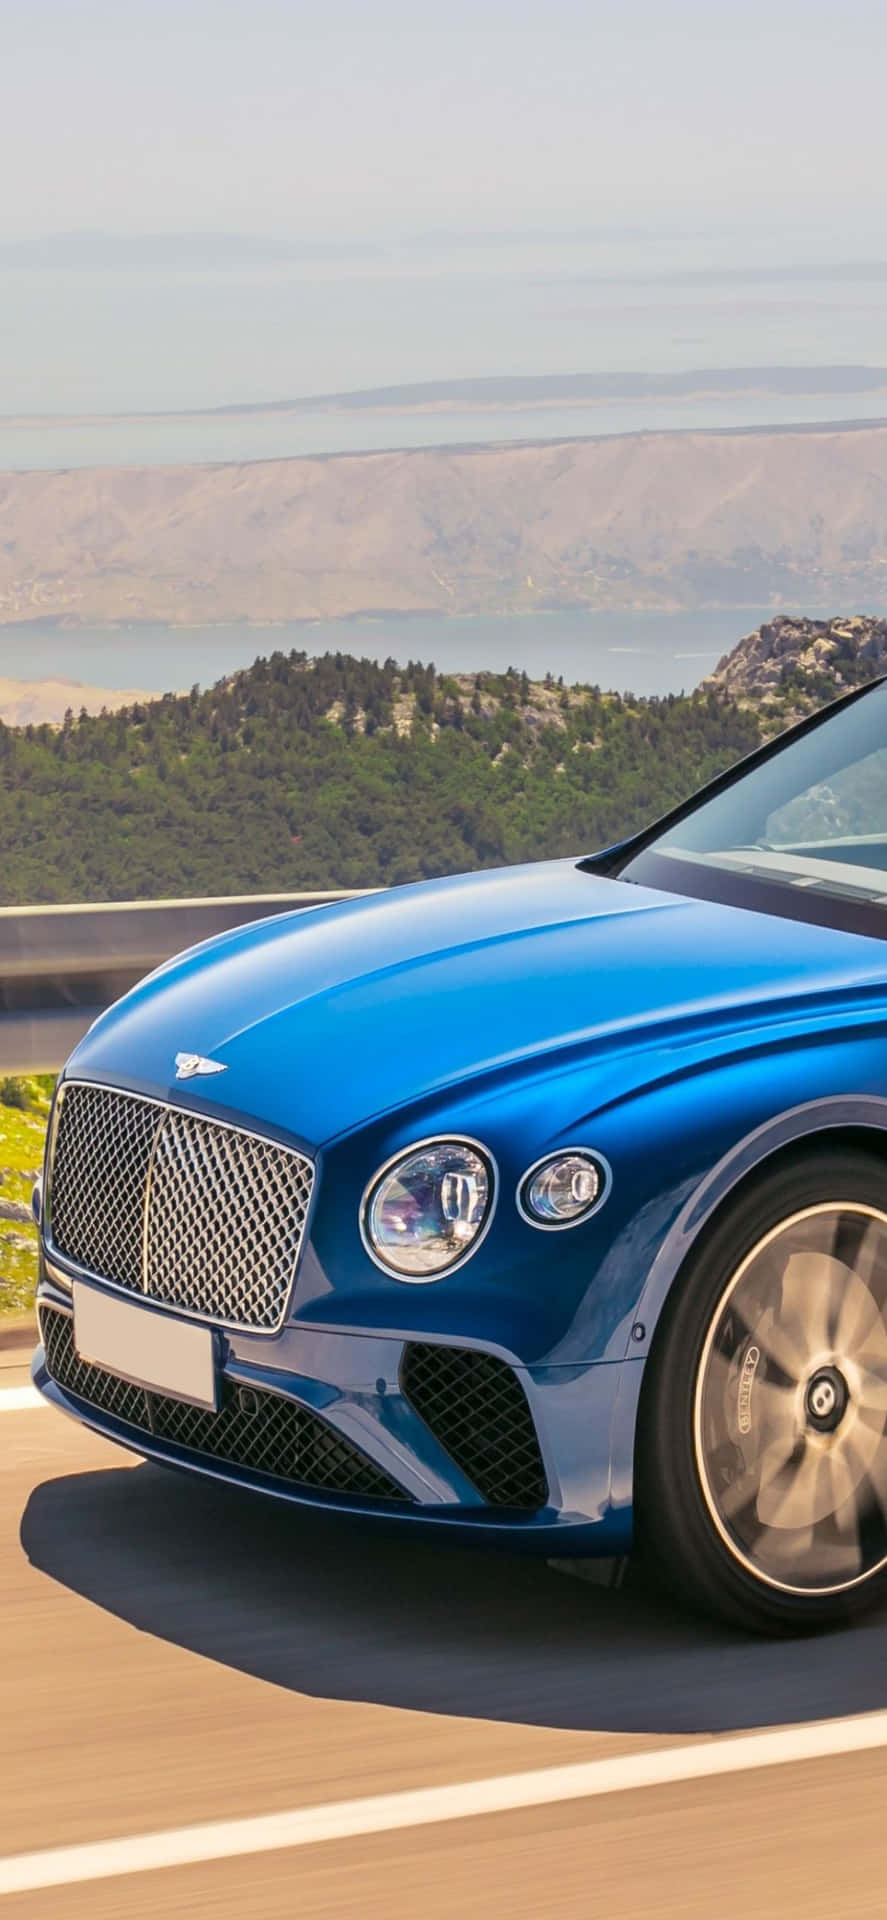 Oplev sand luksus med iPhone Xs Max i samarbejde med Bentley Motors.